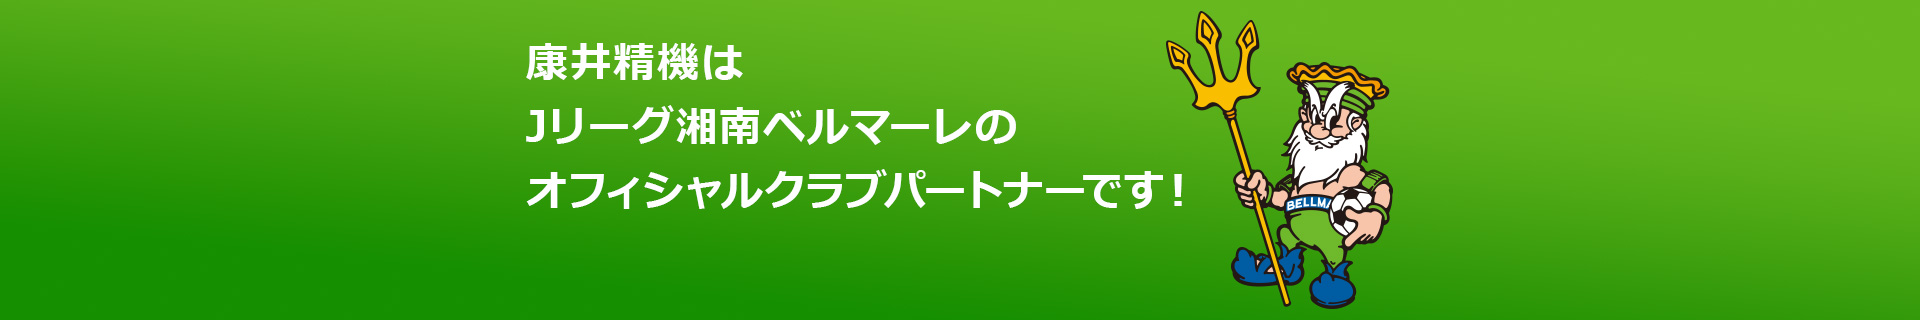 康井精機はJリーグ湘南ベルマーレのオフィシャルクラブパートナーです！